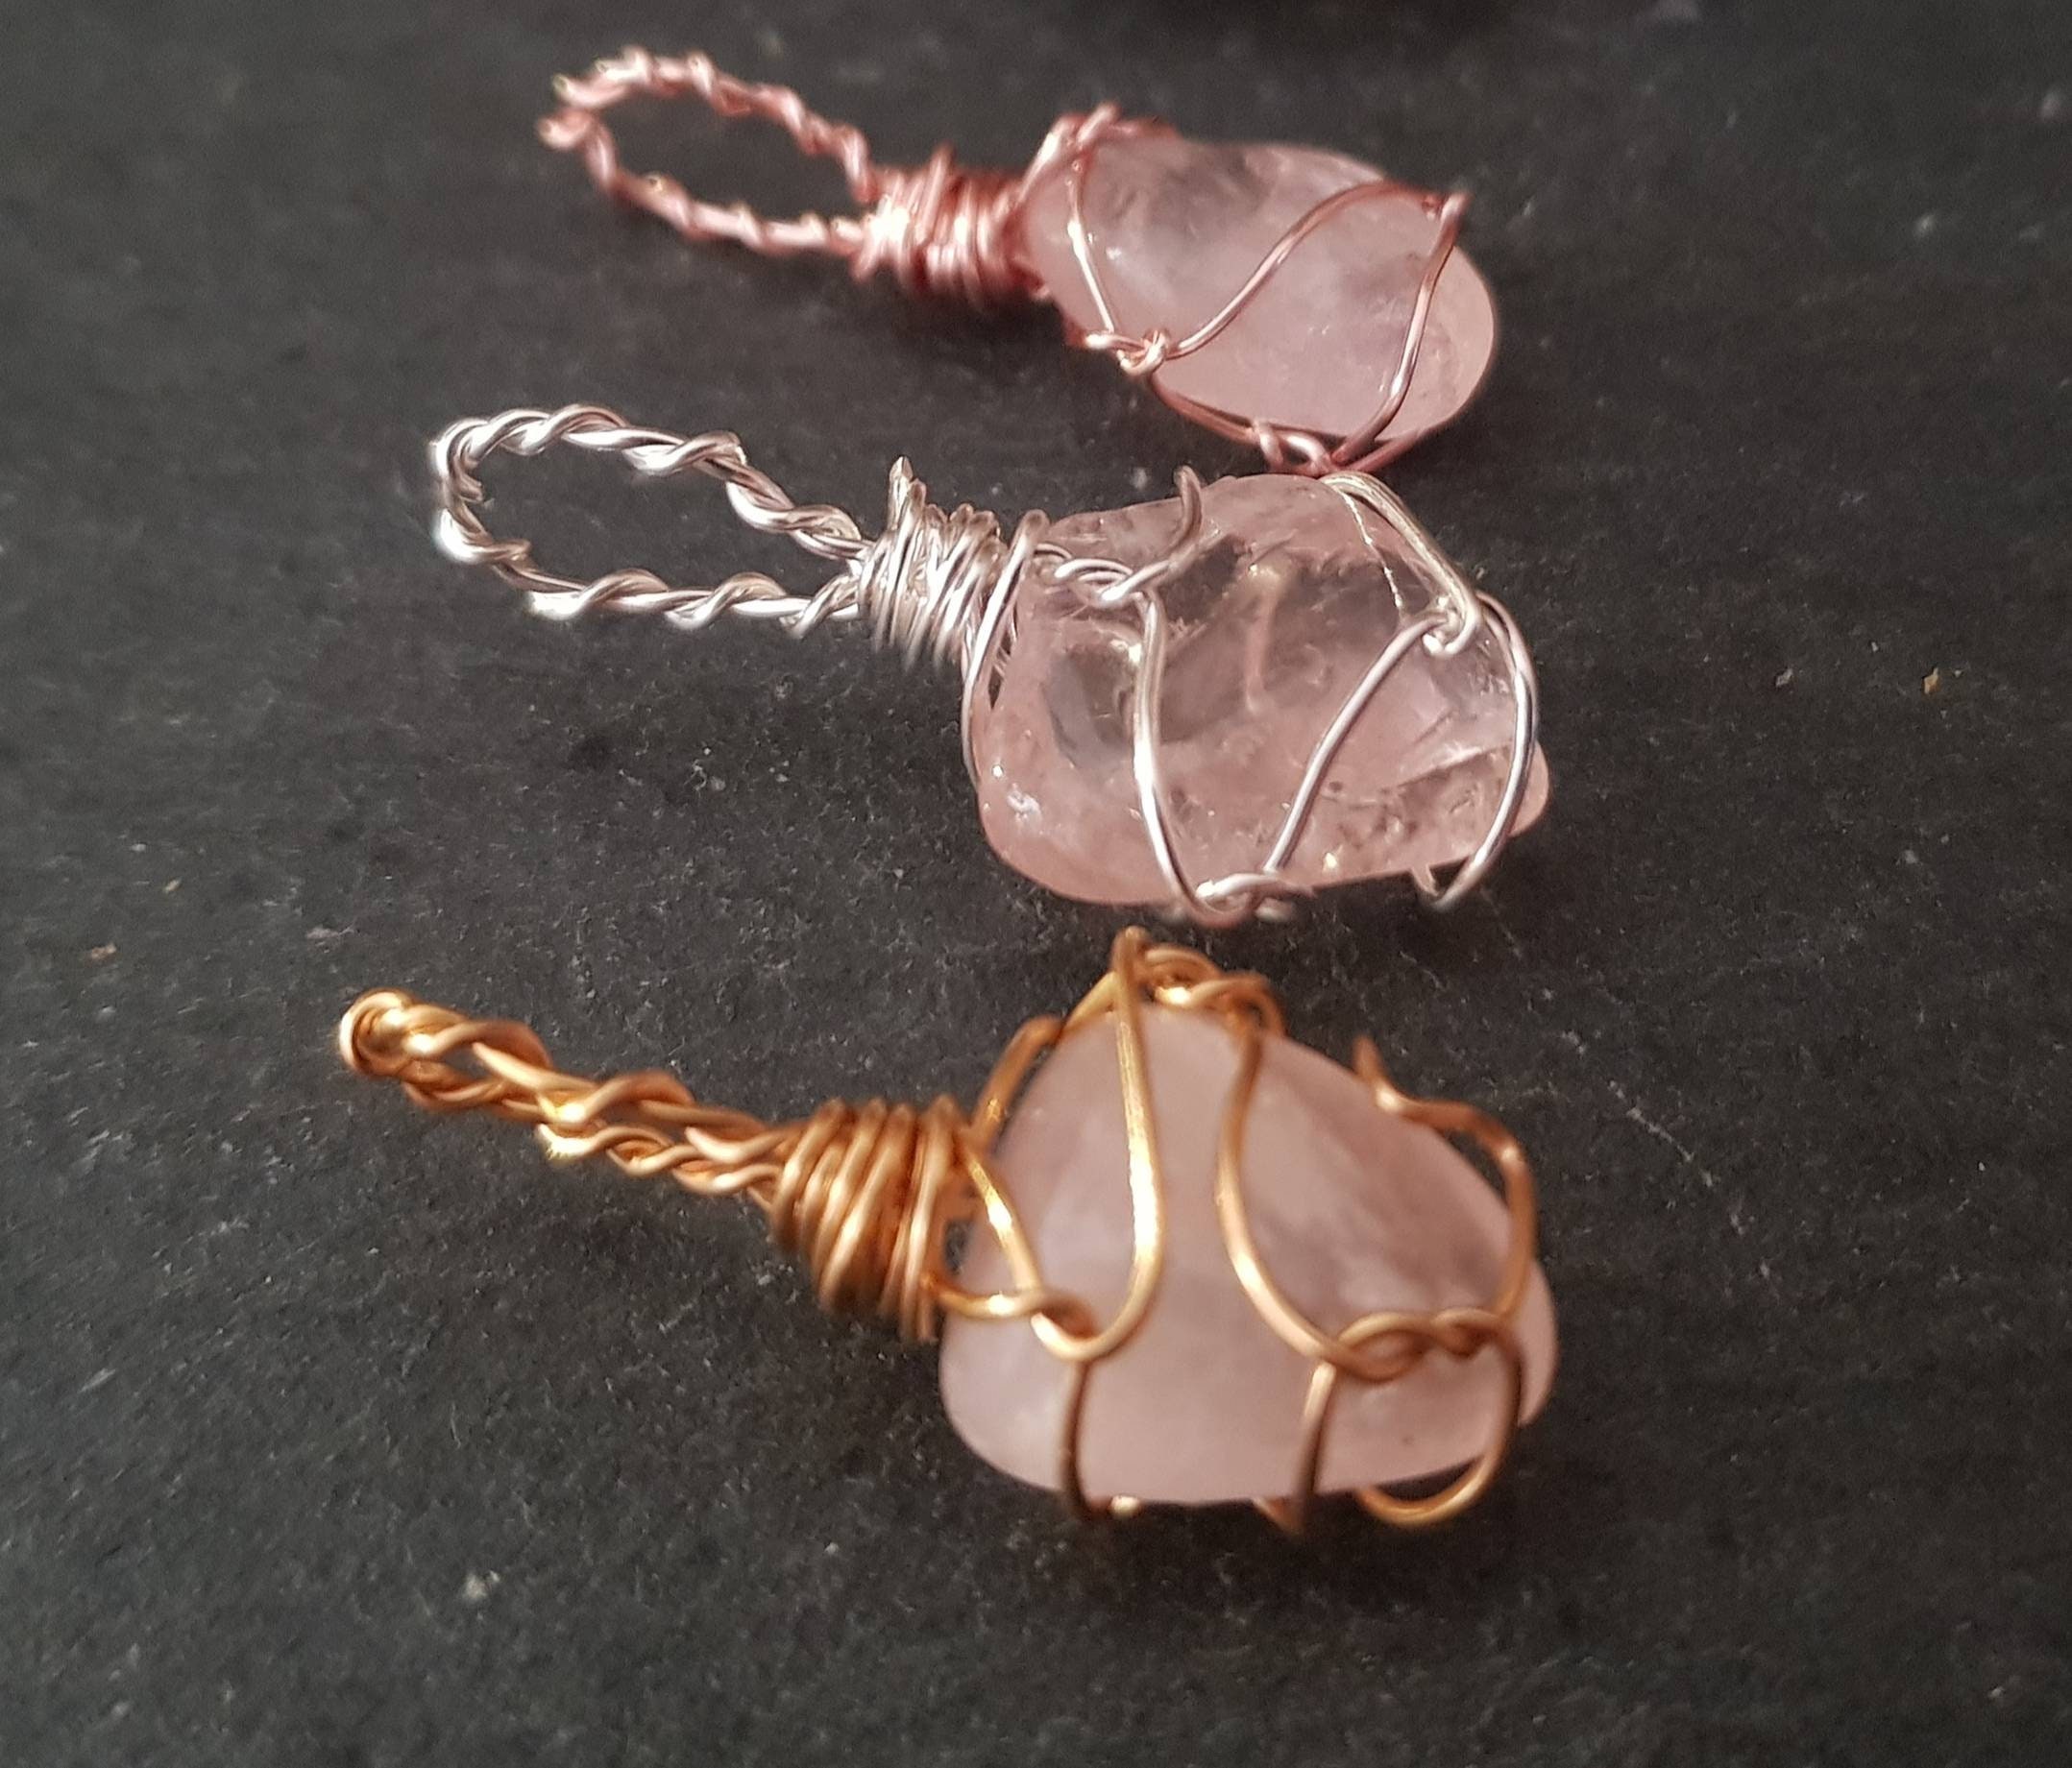 Natural Rose Quartz Pendant / Rose Quartz Charm / Crystal Pendant /  Necklace Charms / Bracelet Charms / Crystal Curiosities Charms 